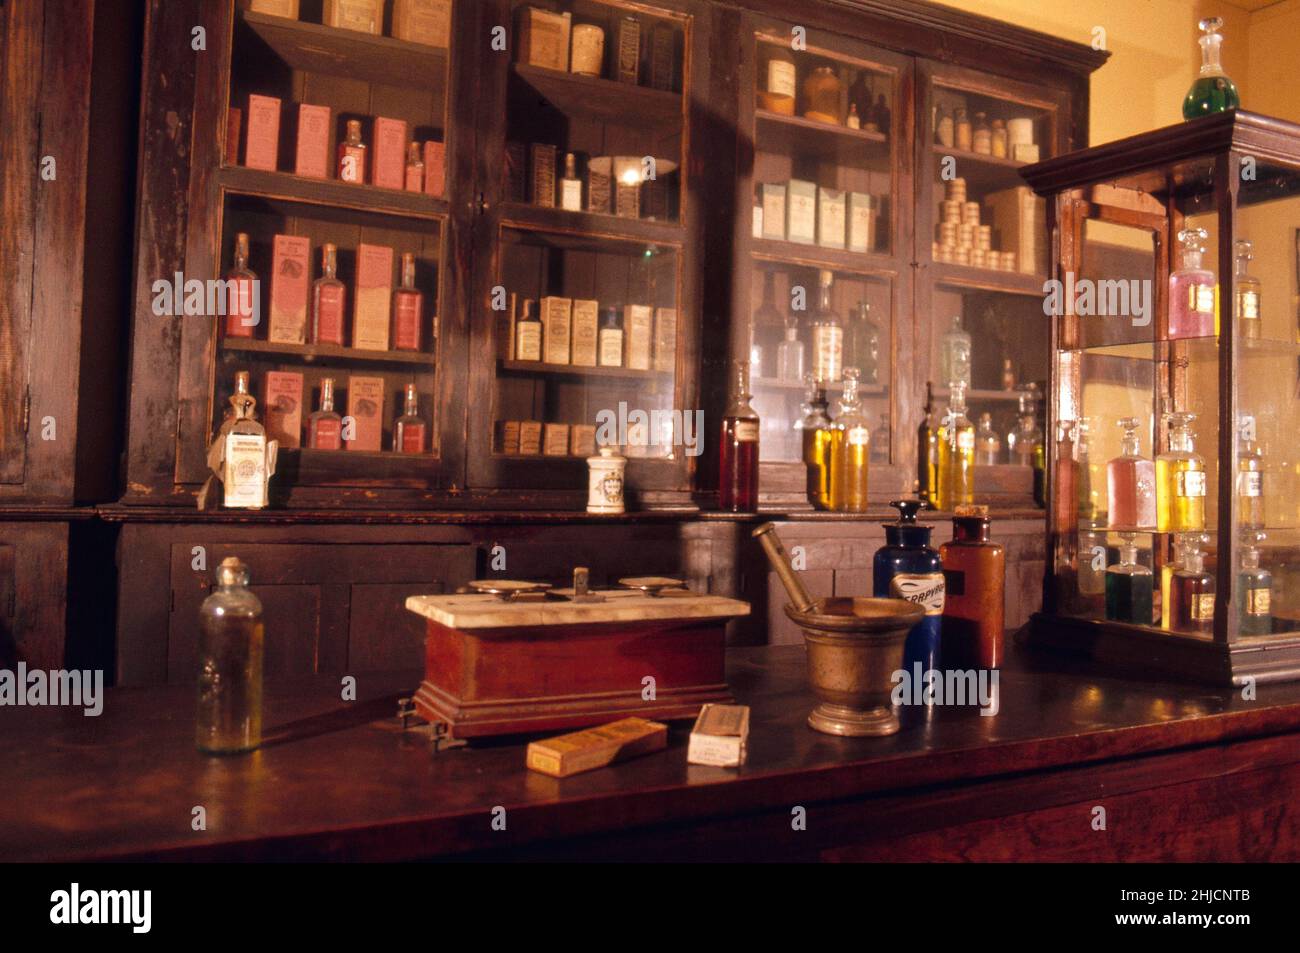 Il Country Doctor Museum di Bailey, North Carolina, è il museo più antico degli Stati Uniti dedicato alla storia della salute rurale americana. Questo negozio di droga del 19th secolo è ora un display. Foto Stock